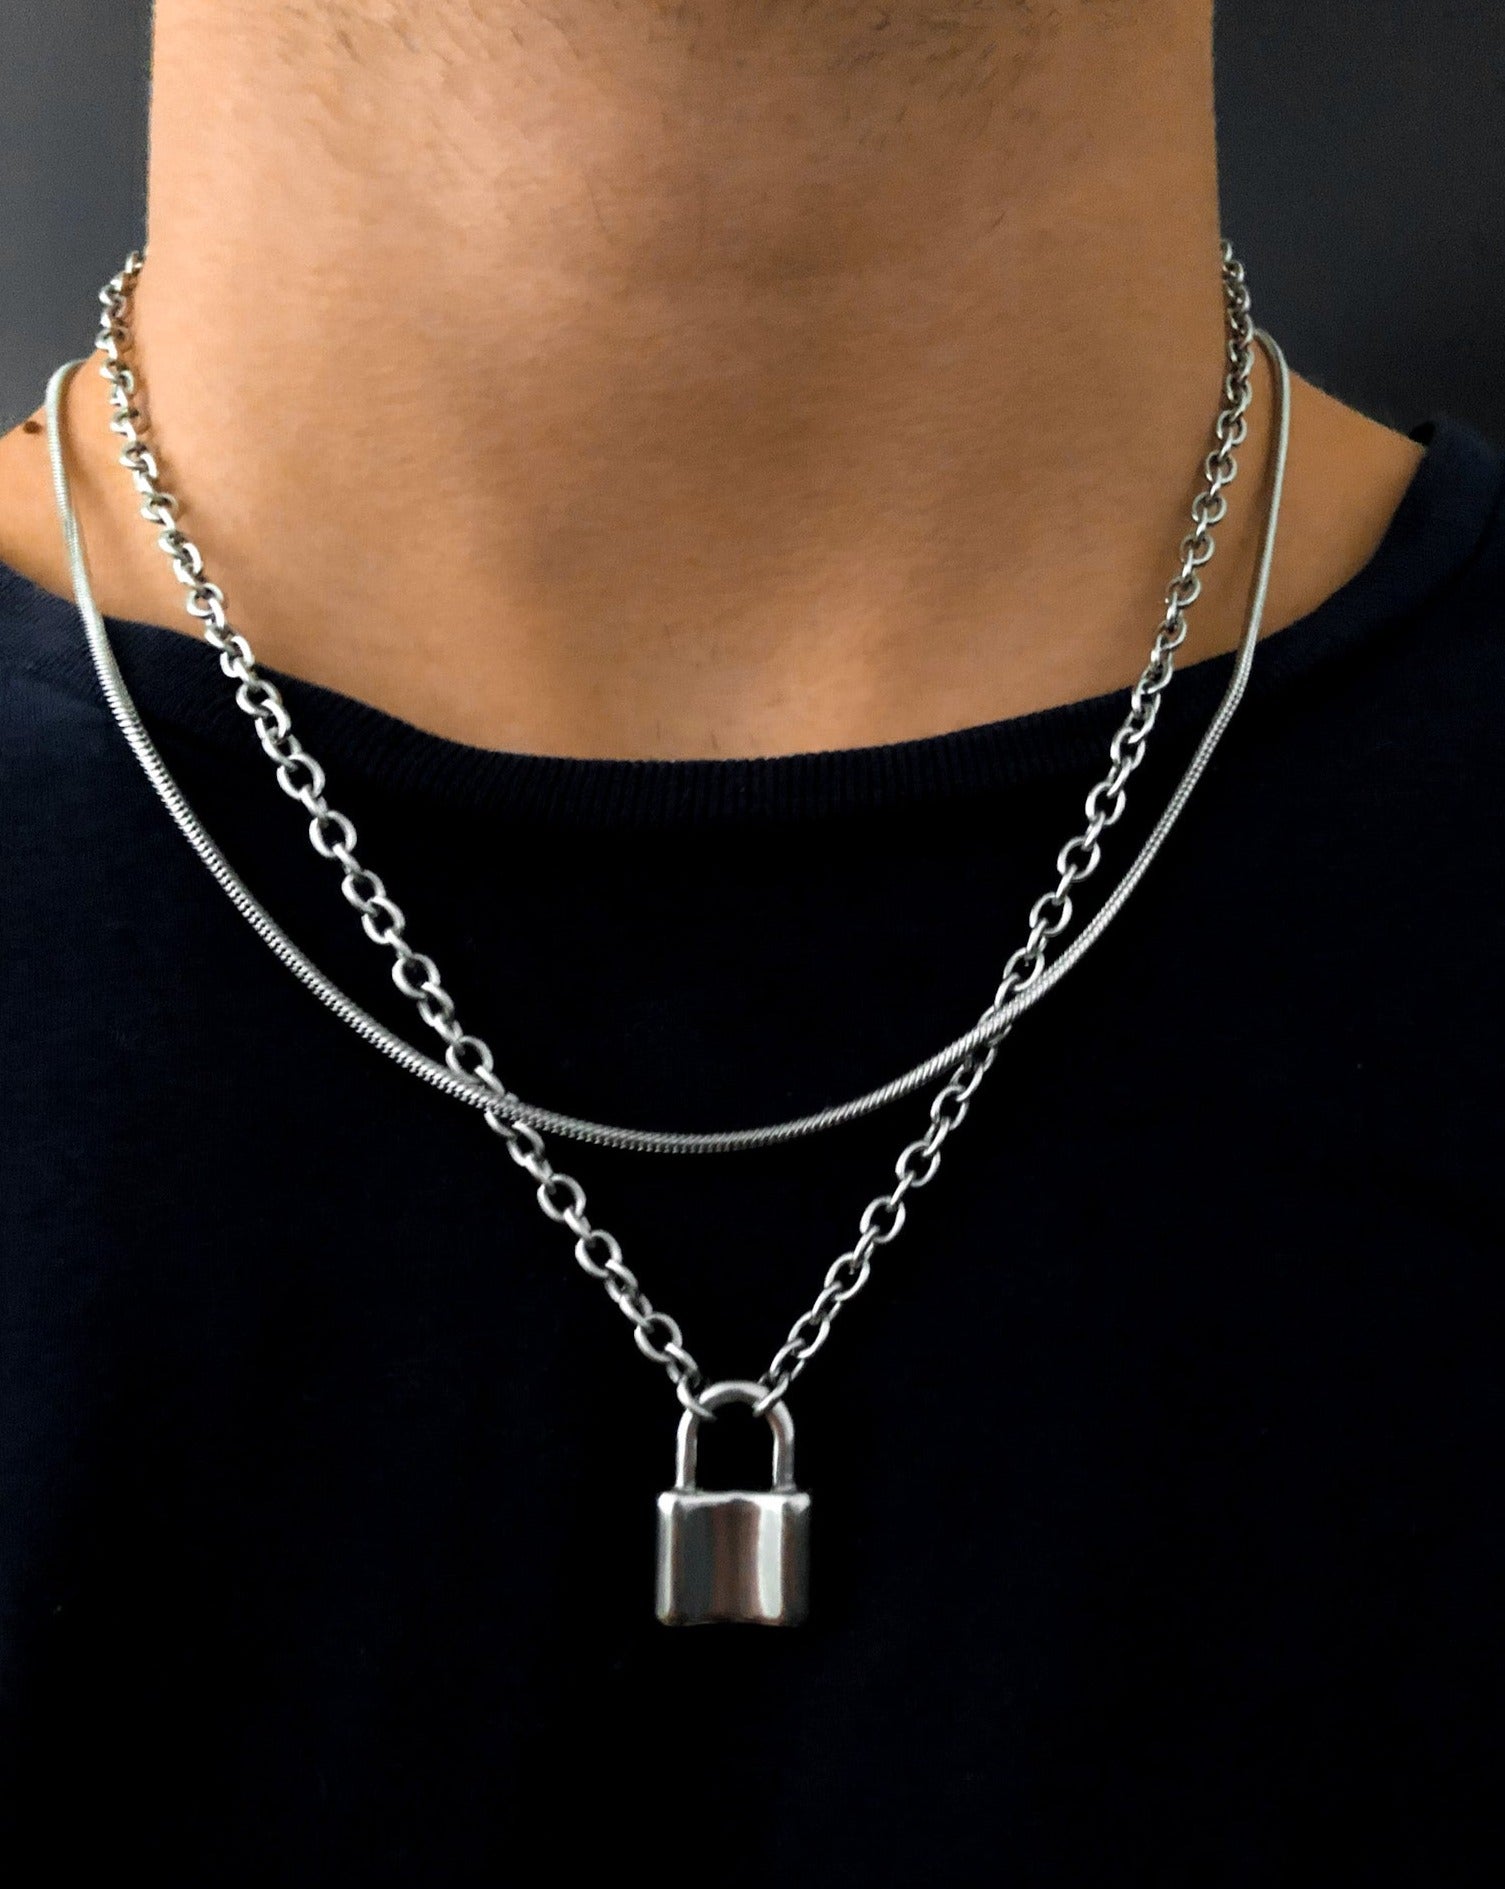 Initial Lock Necklace - Sterling Silver - Oak & Luna